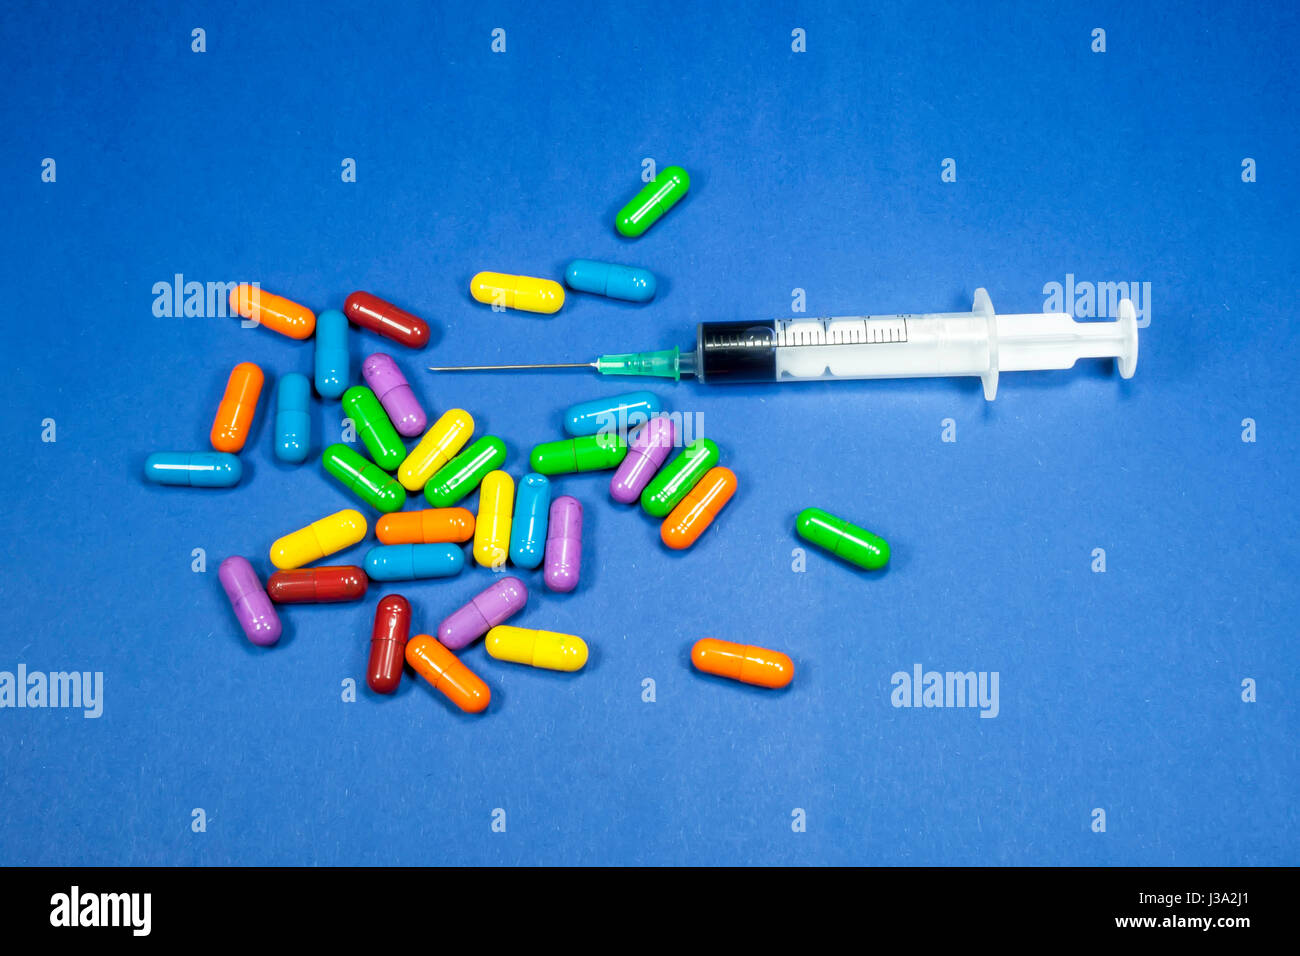 Medizinische Spritze teilweise gefüllt mit Flüssigkeit, horizontal platziert unter einem Haufen von verschiedenen farbigen Pillen, medizinisches Konzept, blauer Hintergrund Stockfoto